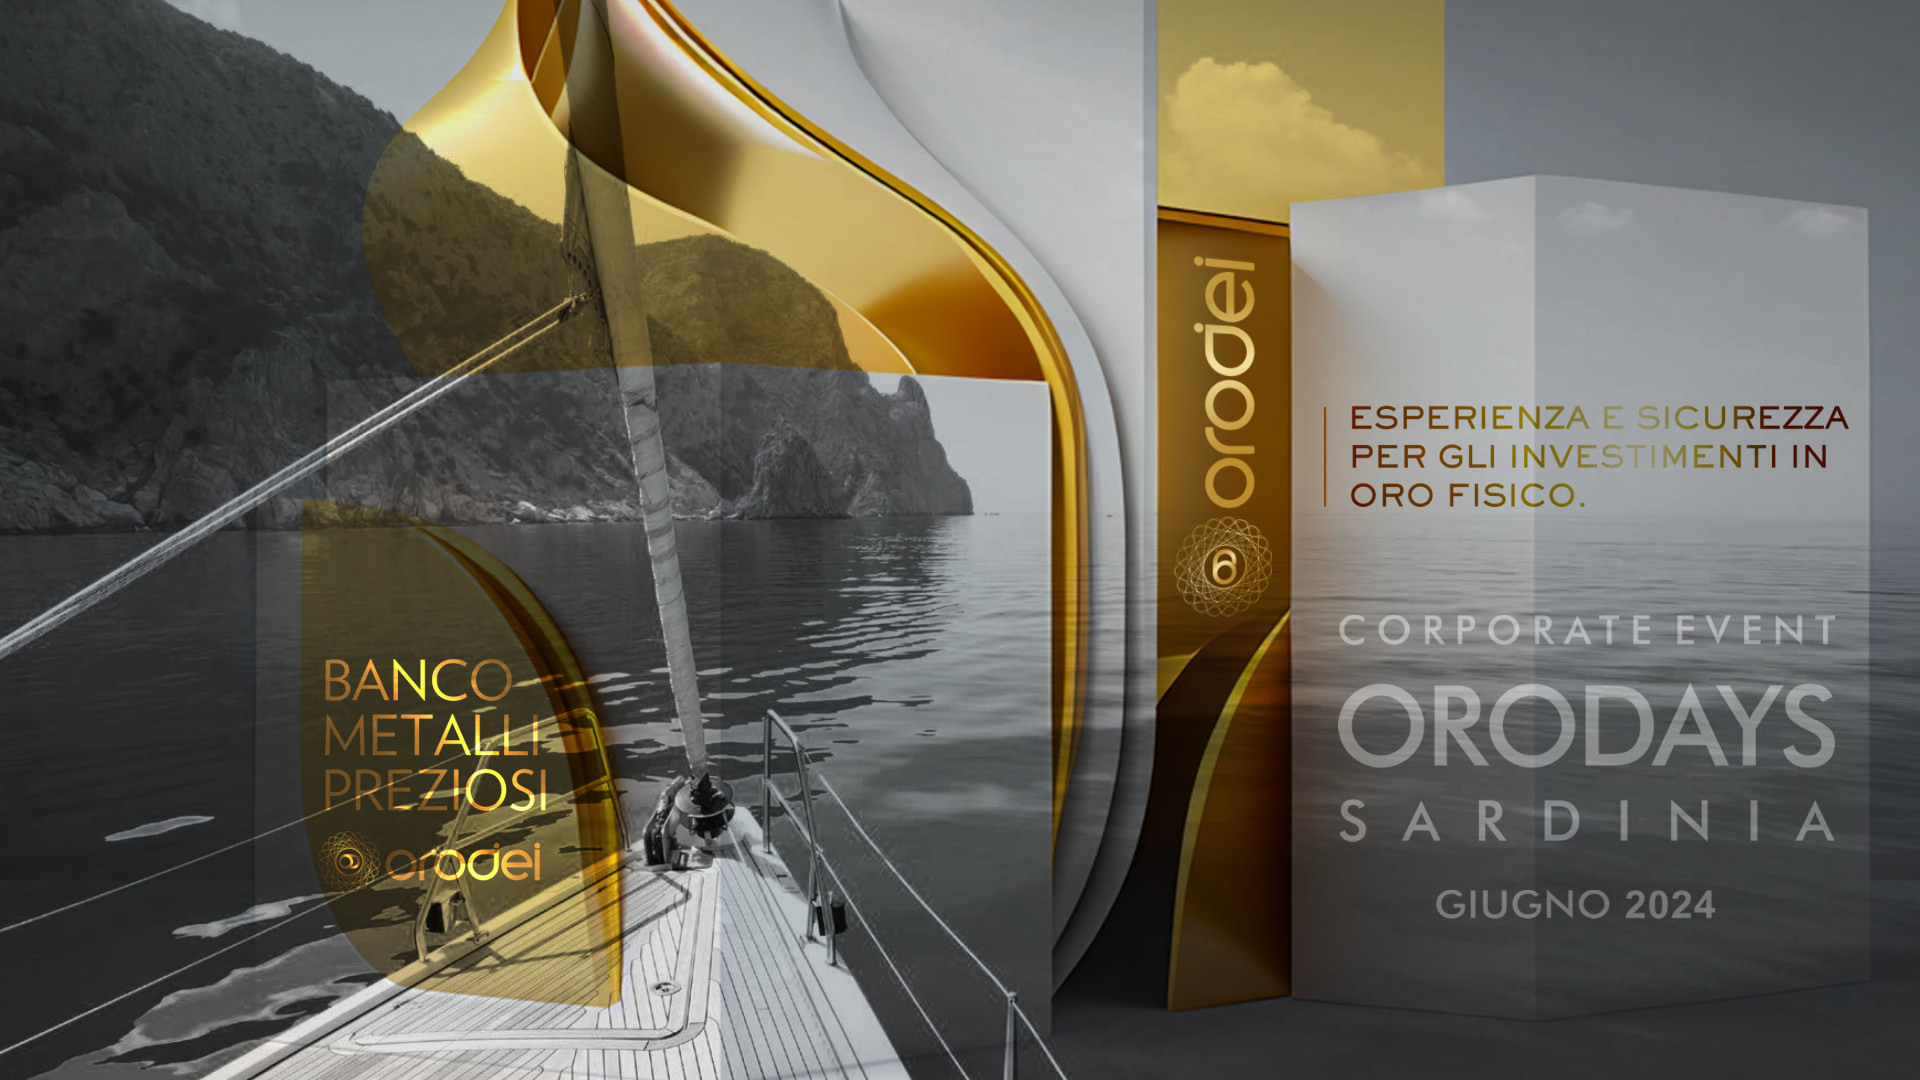 Orodei Banco Metalli Preziosi: Corporate Event OroDays Sardinia